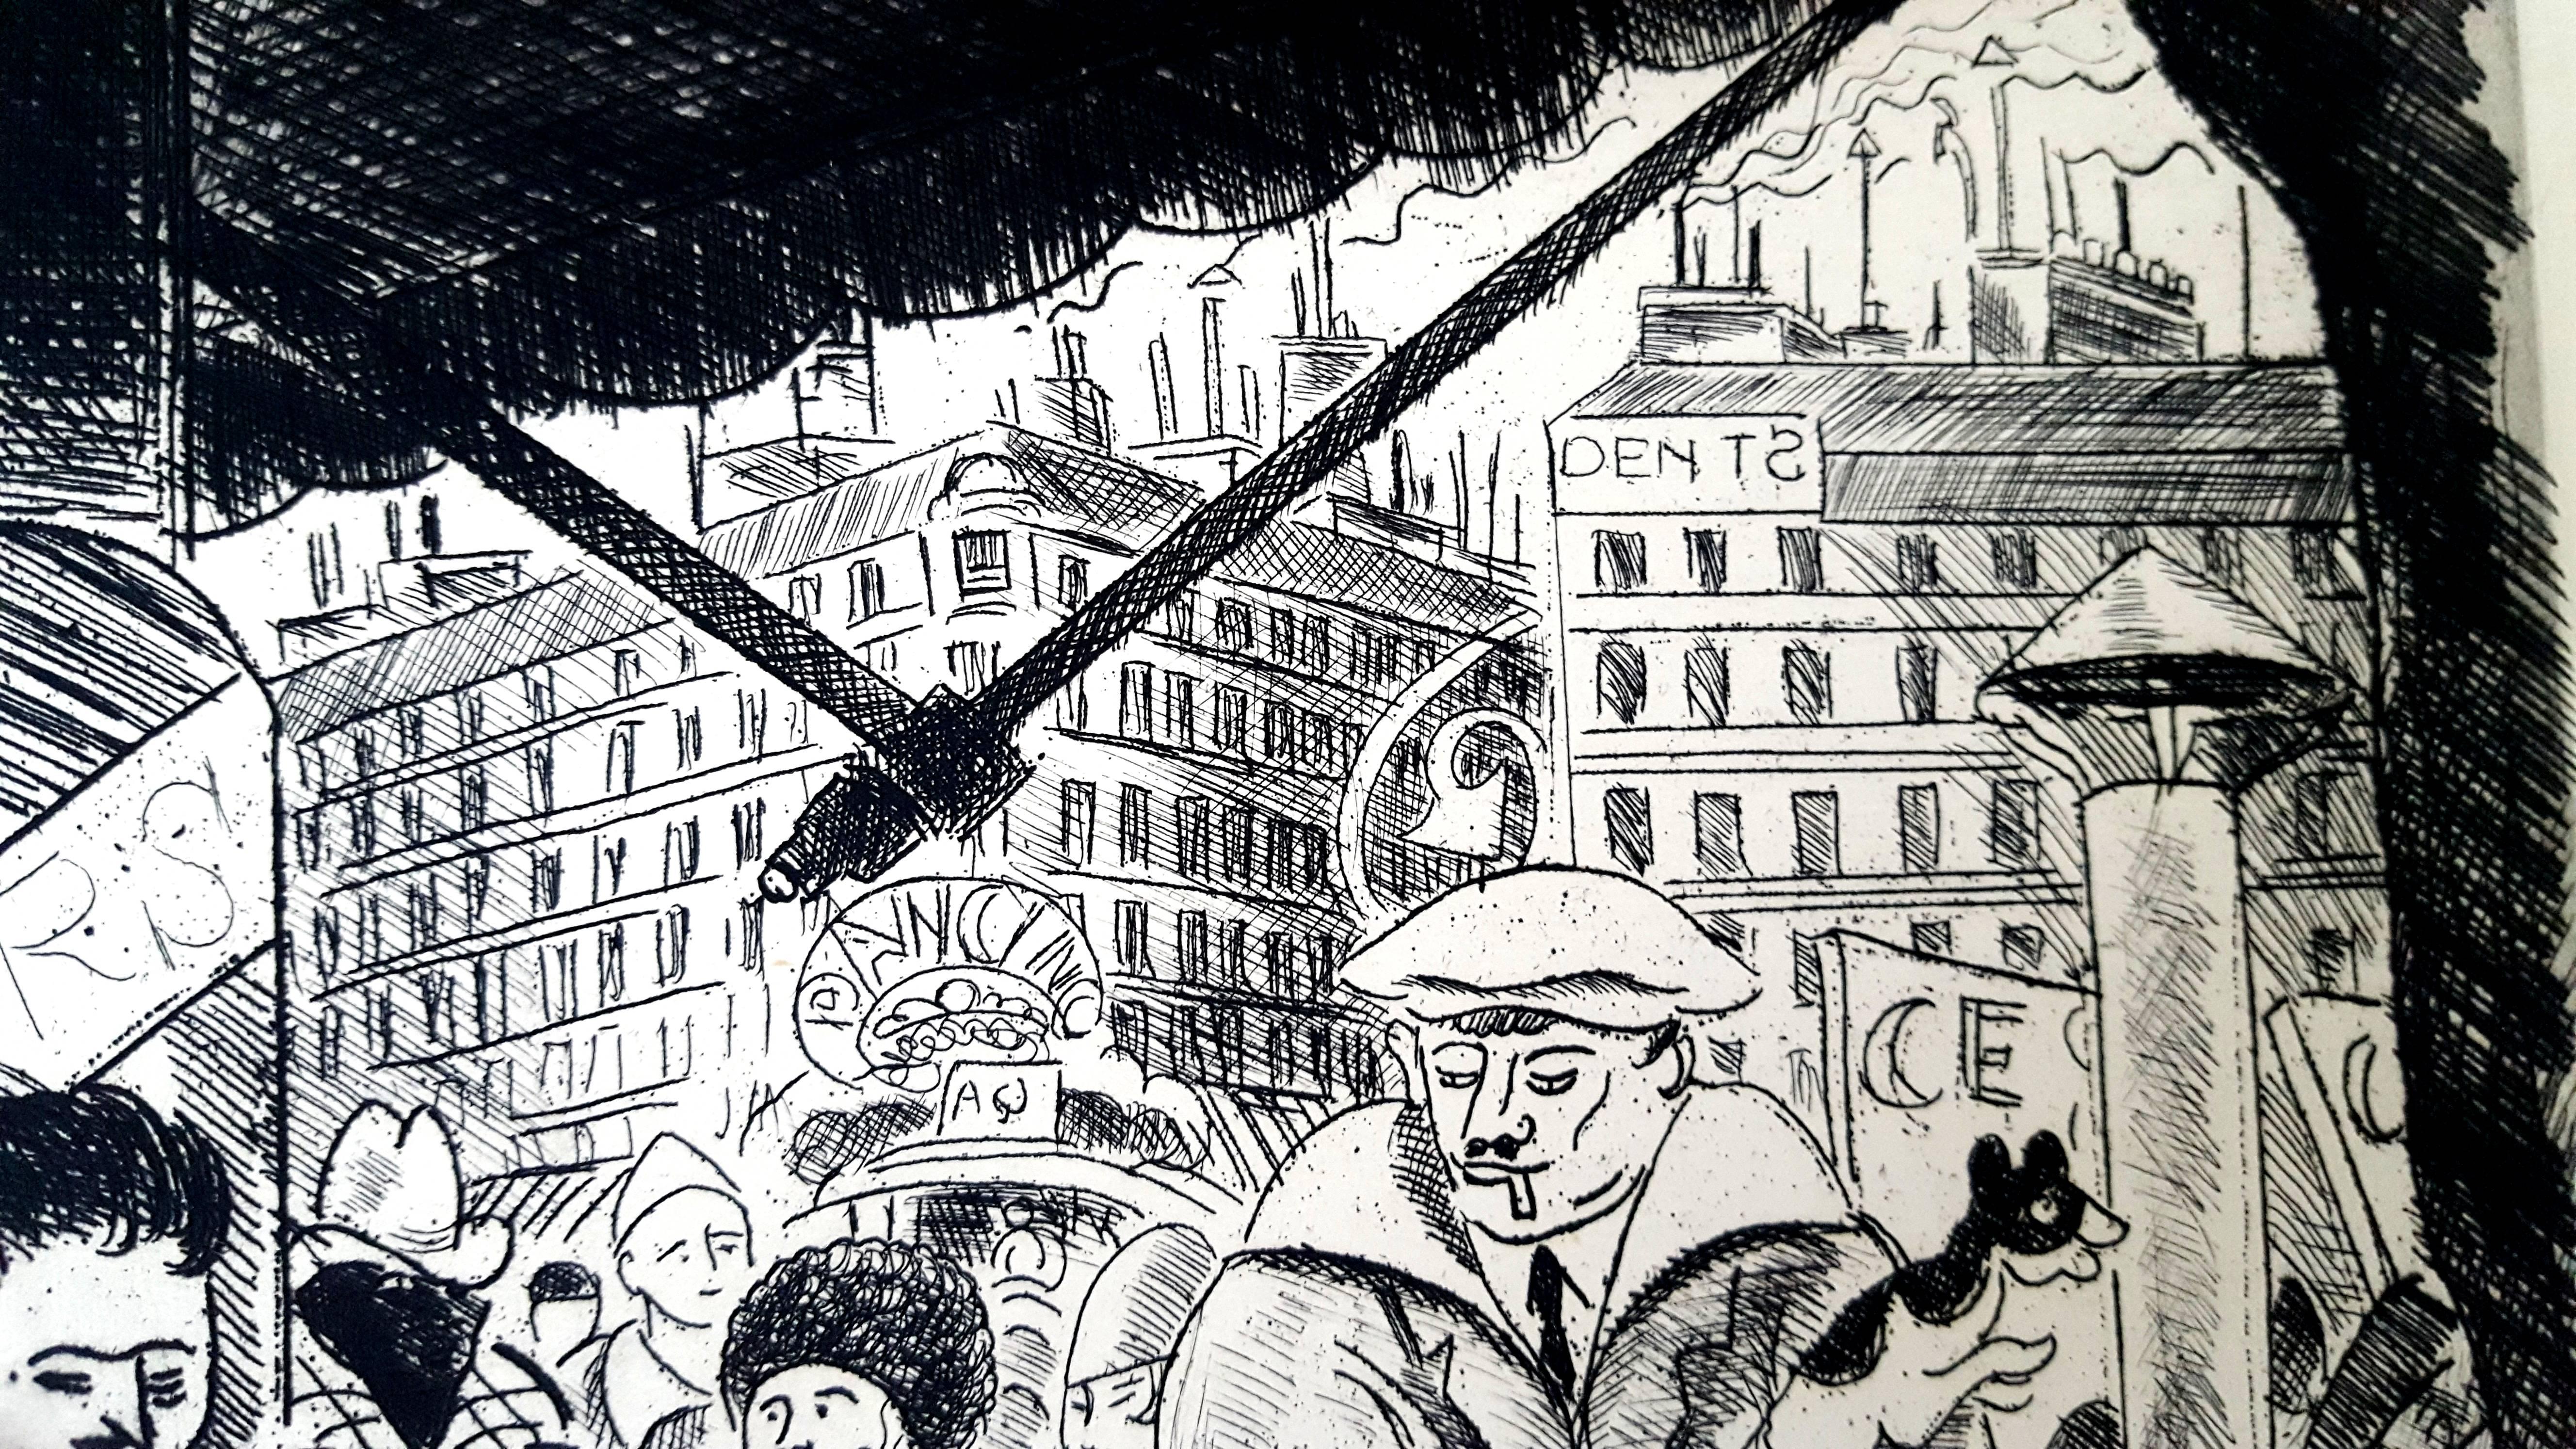 Pierre Falké - Paris' Terrasse - Original Etching
Dimensions : 13 x 10". 
Paper : Rives vellum. 
Edition : 225 copies.
1927
From Tableaux de Paris, Emile-Paul Freres, Paris

PIERRE FALKE	(French	/ 1884-1947)

Pierre Falké was born in Paris, and